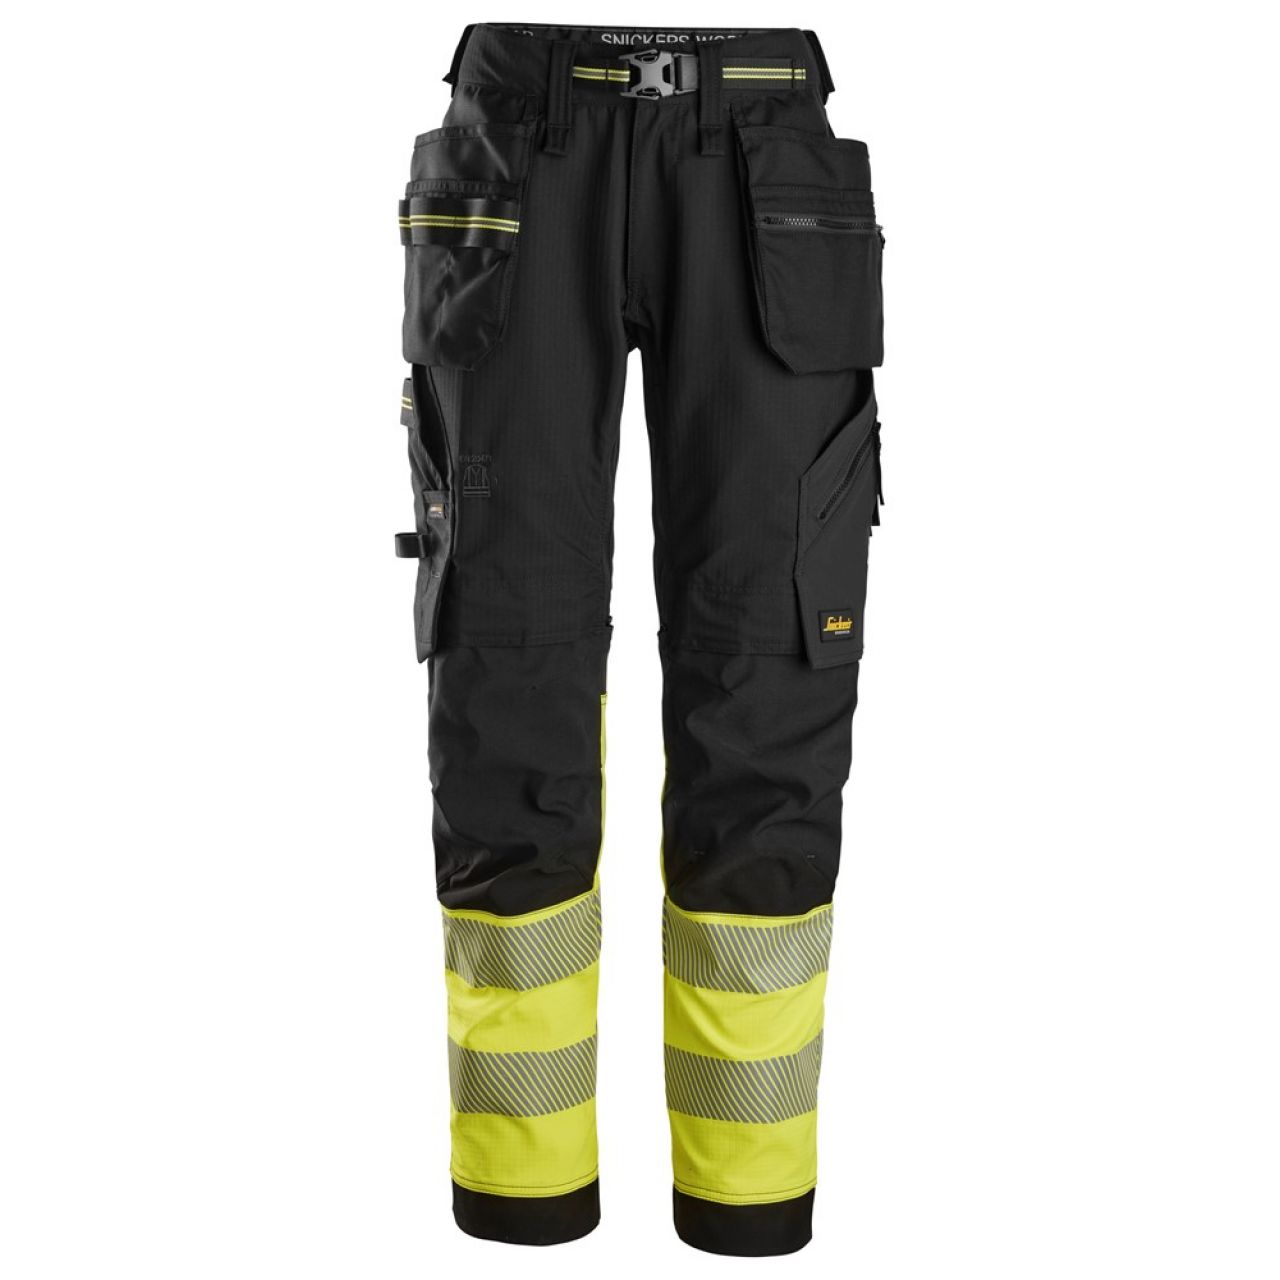 6934 Pantalones largos de trabajo elásticos de alta visibilidad clase 1 con bolsillos flotantes negro-amarillo talla 124